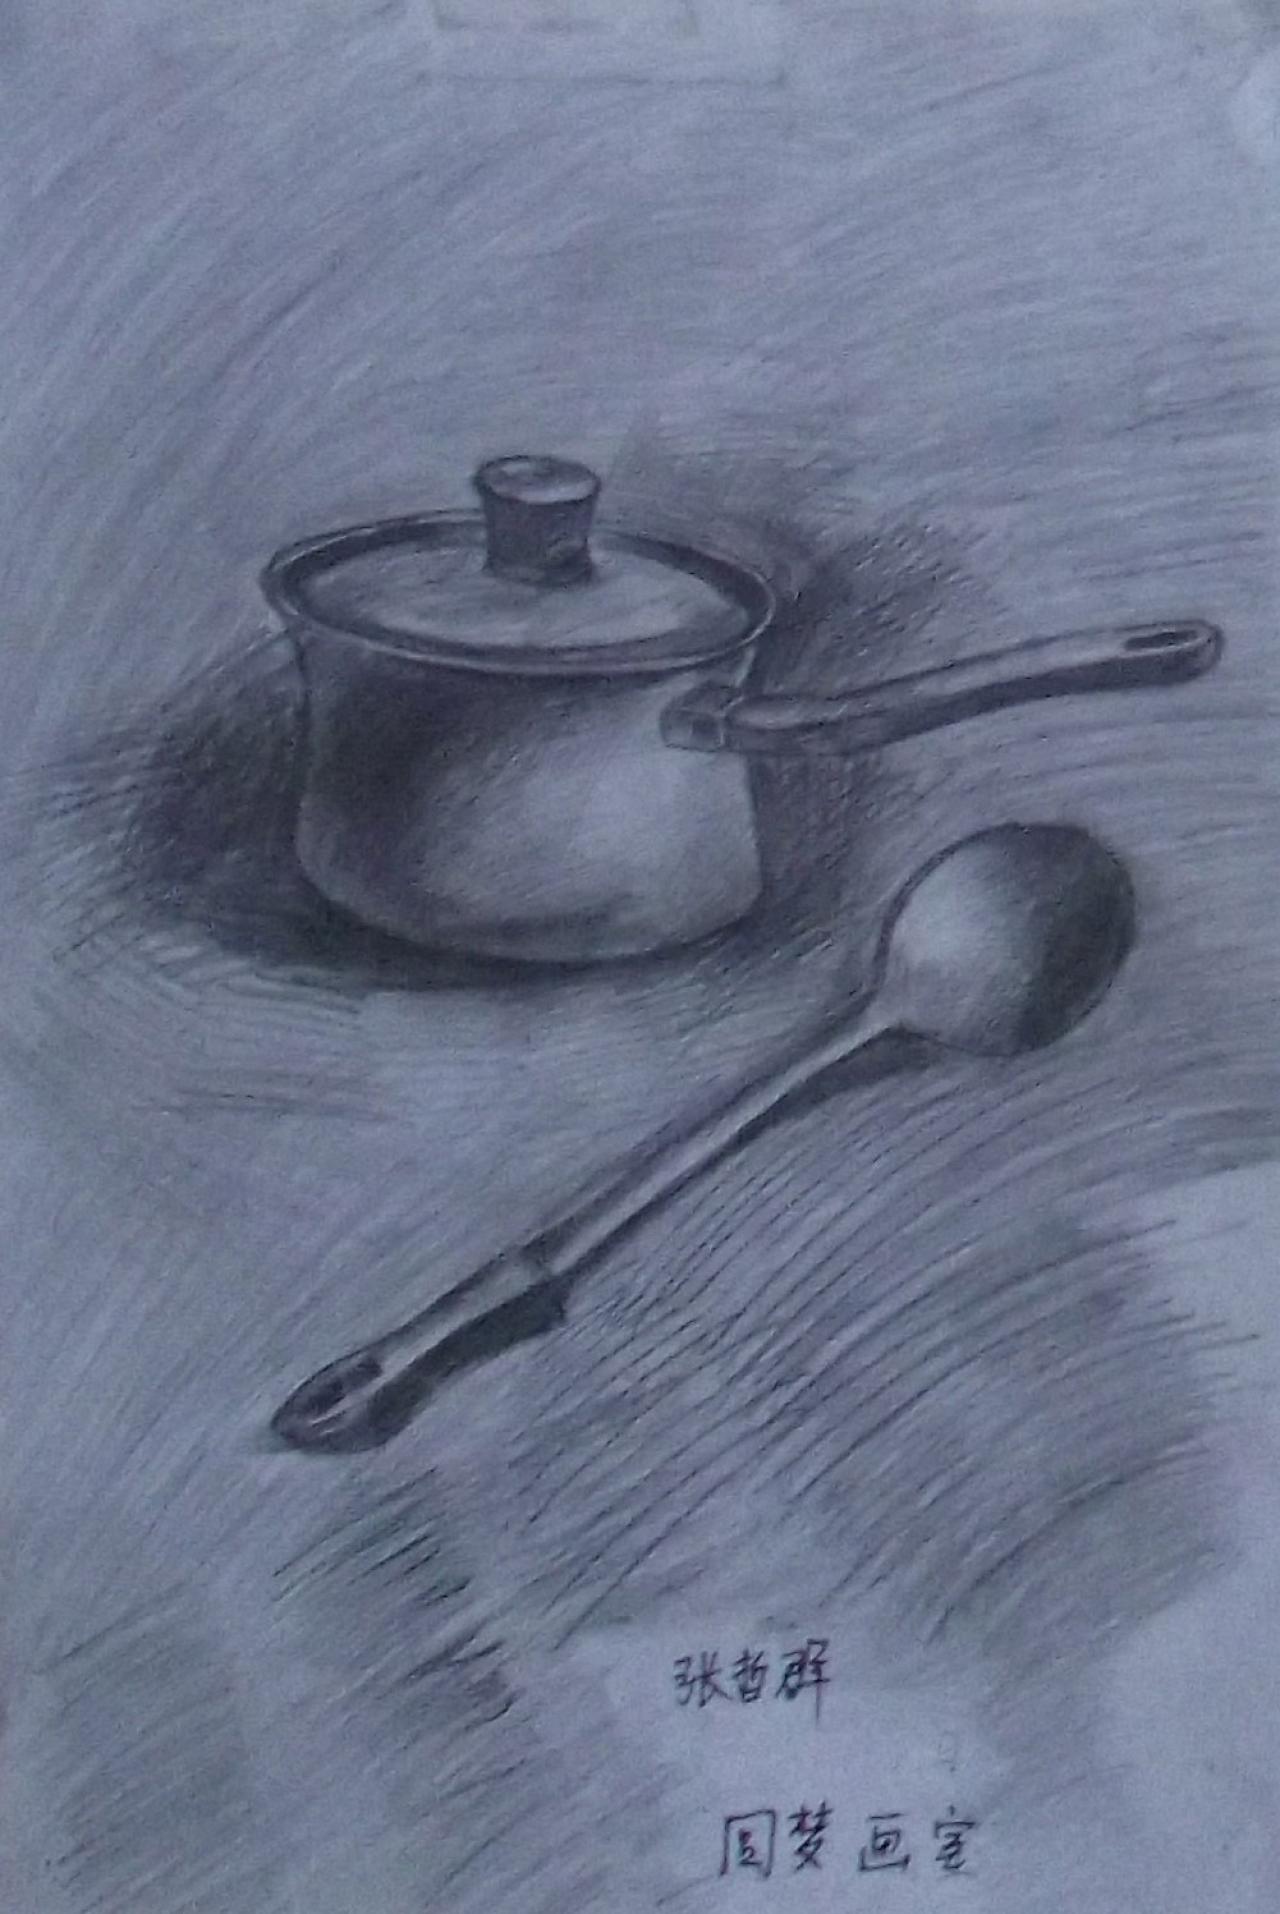 铝锅、勺子静物素描 张哲群画